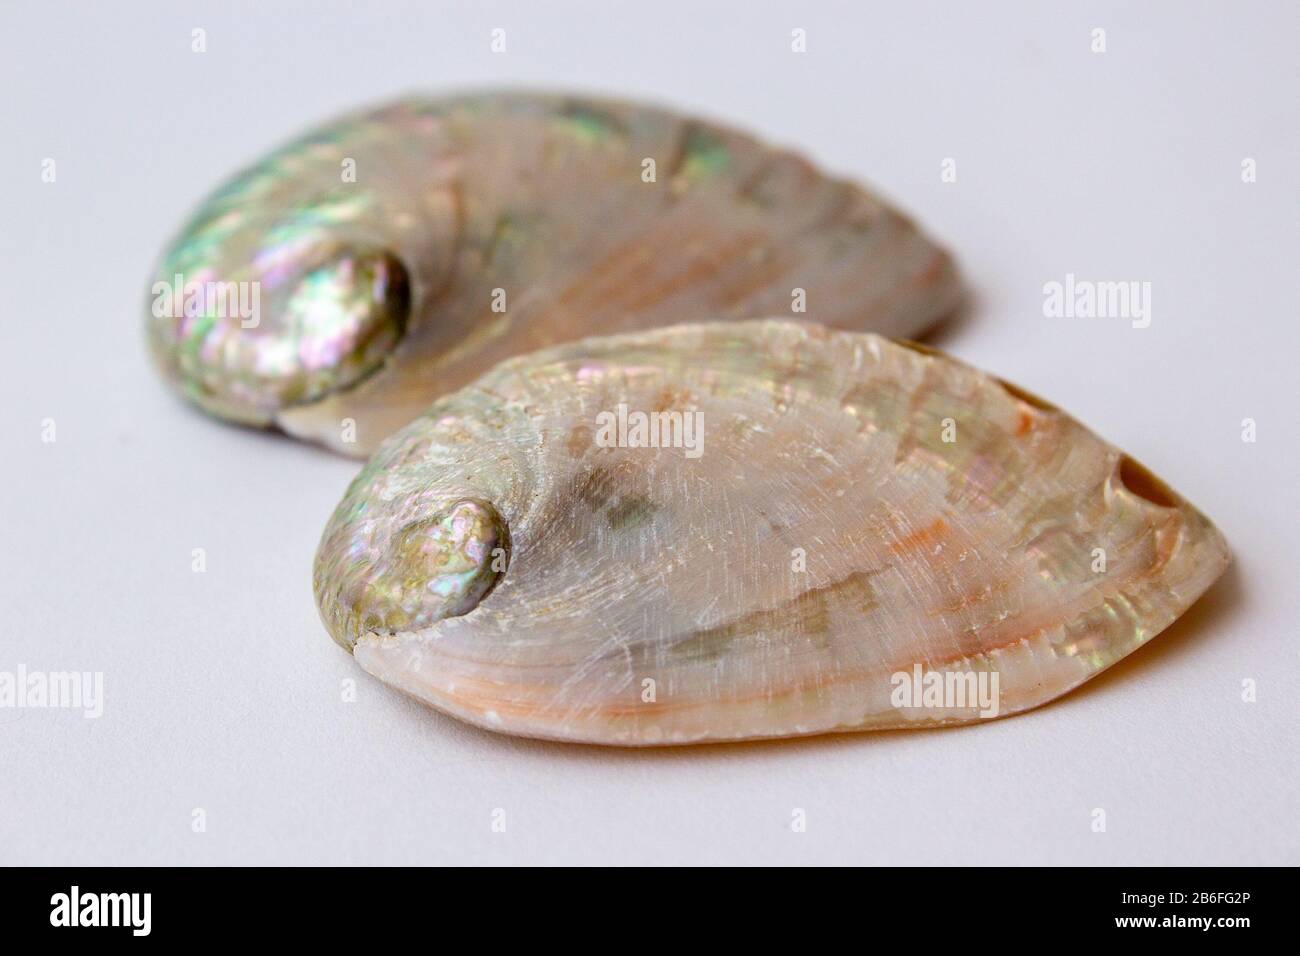 Ein Paar abalone Schalen, ähnlich, aber leicht anders Stockfoto